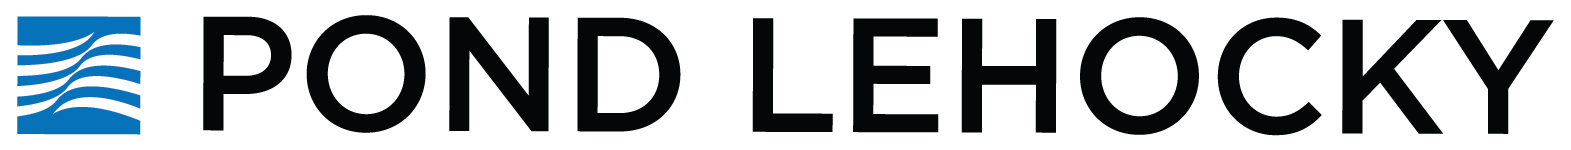 Pond Lehocky Giordano, LLP logo